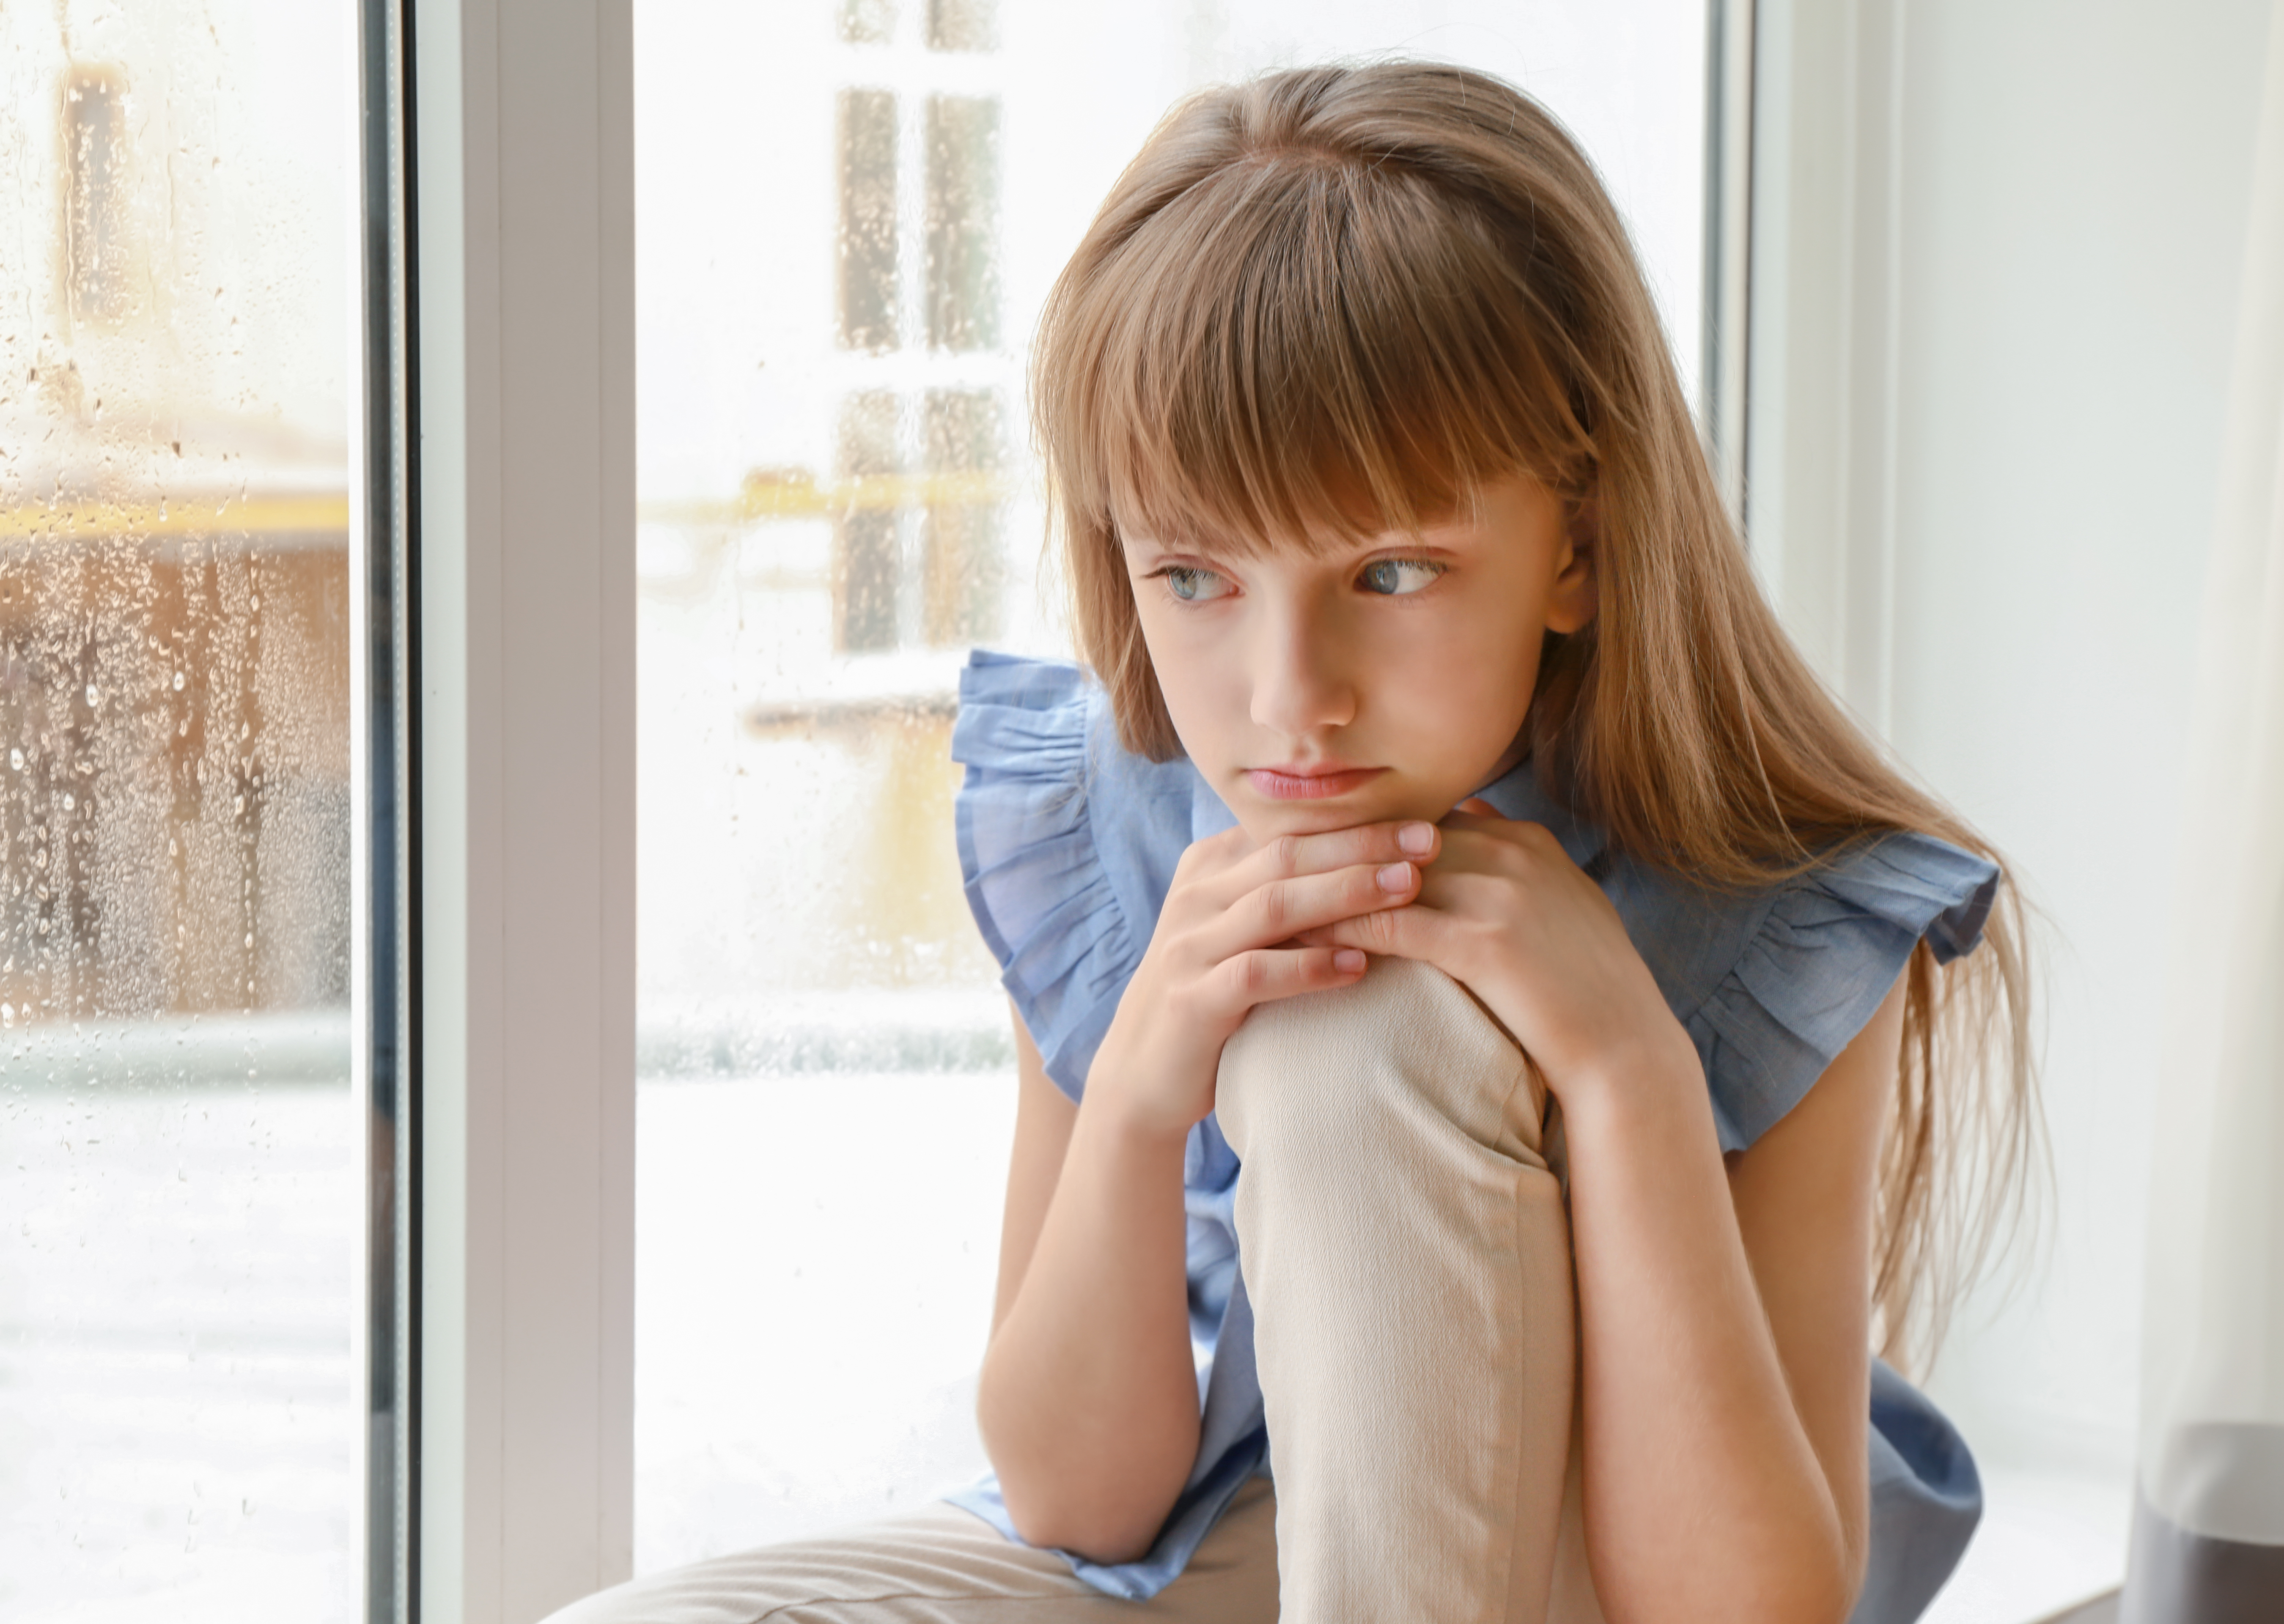 Little girl sulking by the window | Source: Shutterstock